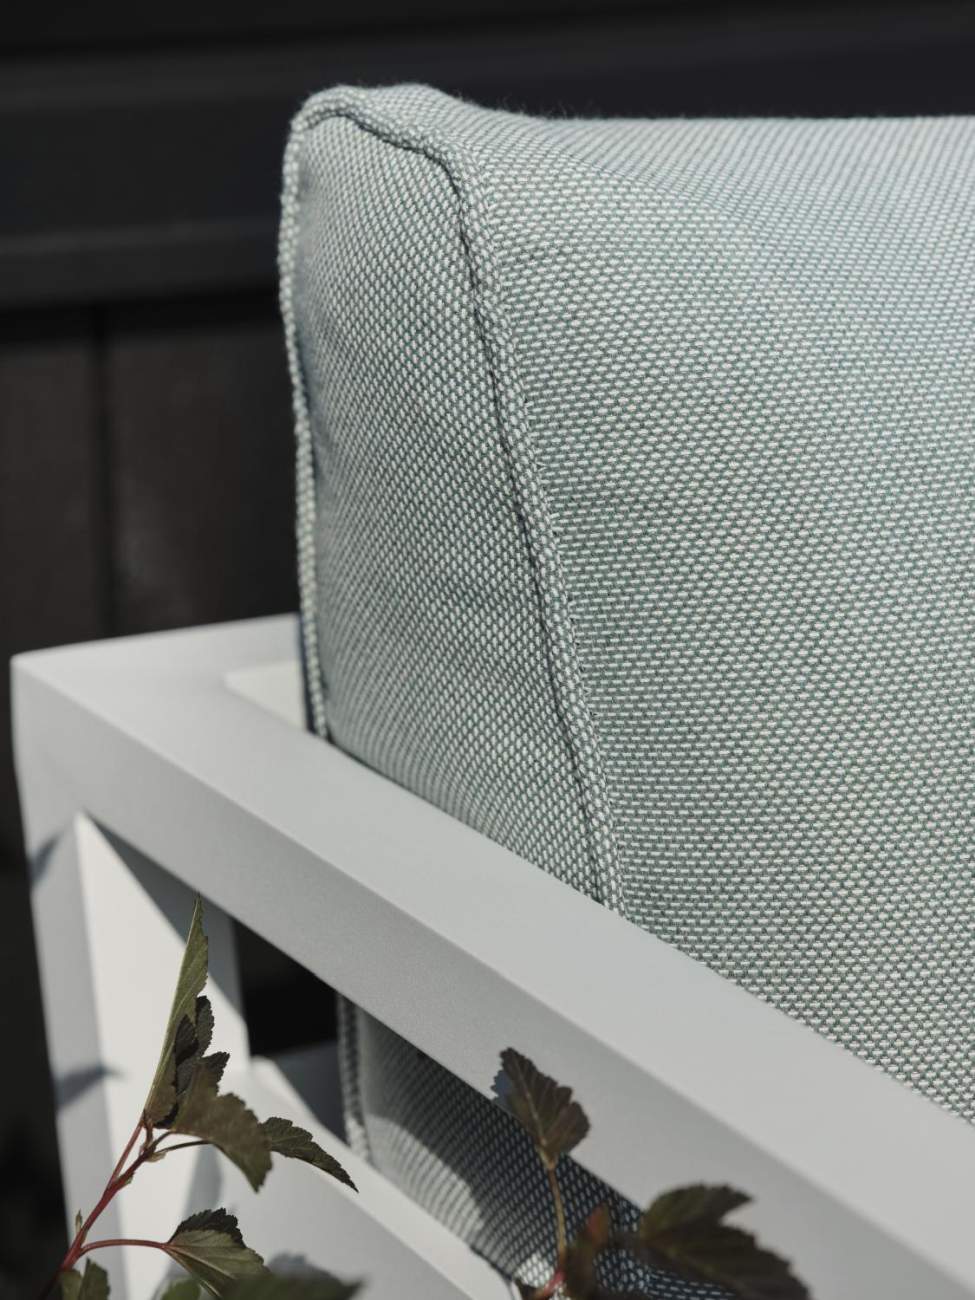 Der Gartensessel Weldon überzeugt mit seinem modernen Design. Gefertigt wurde er aus Metall, welches einen weißen Farbton besitzt. Das Gestell ist auch aus Metall und hat eine weiße Farbe. Die Sitzhöhe des Sessels beträgt 43 cm.